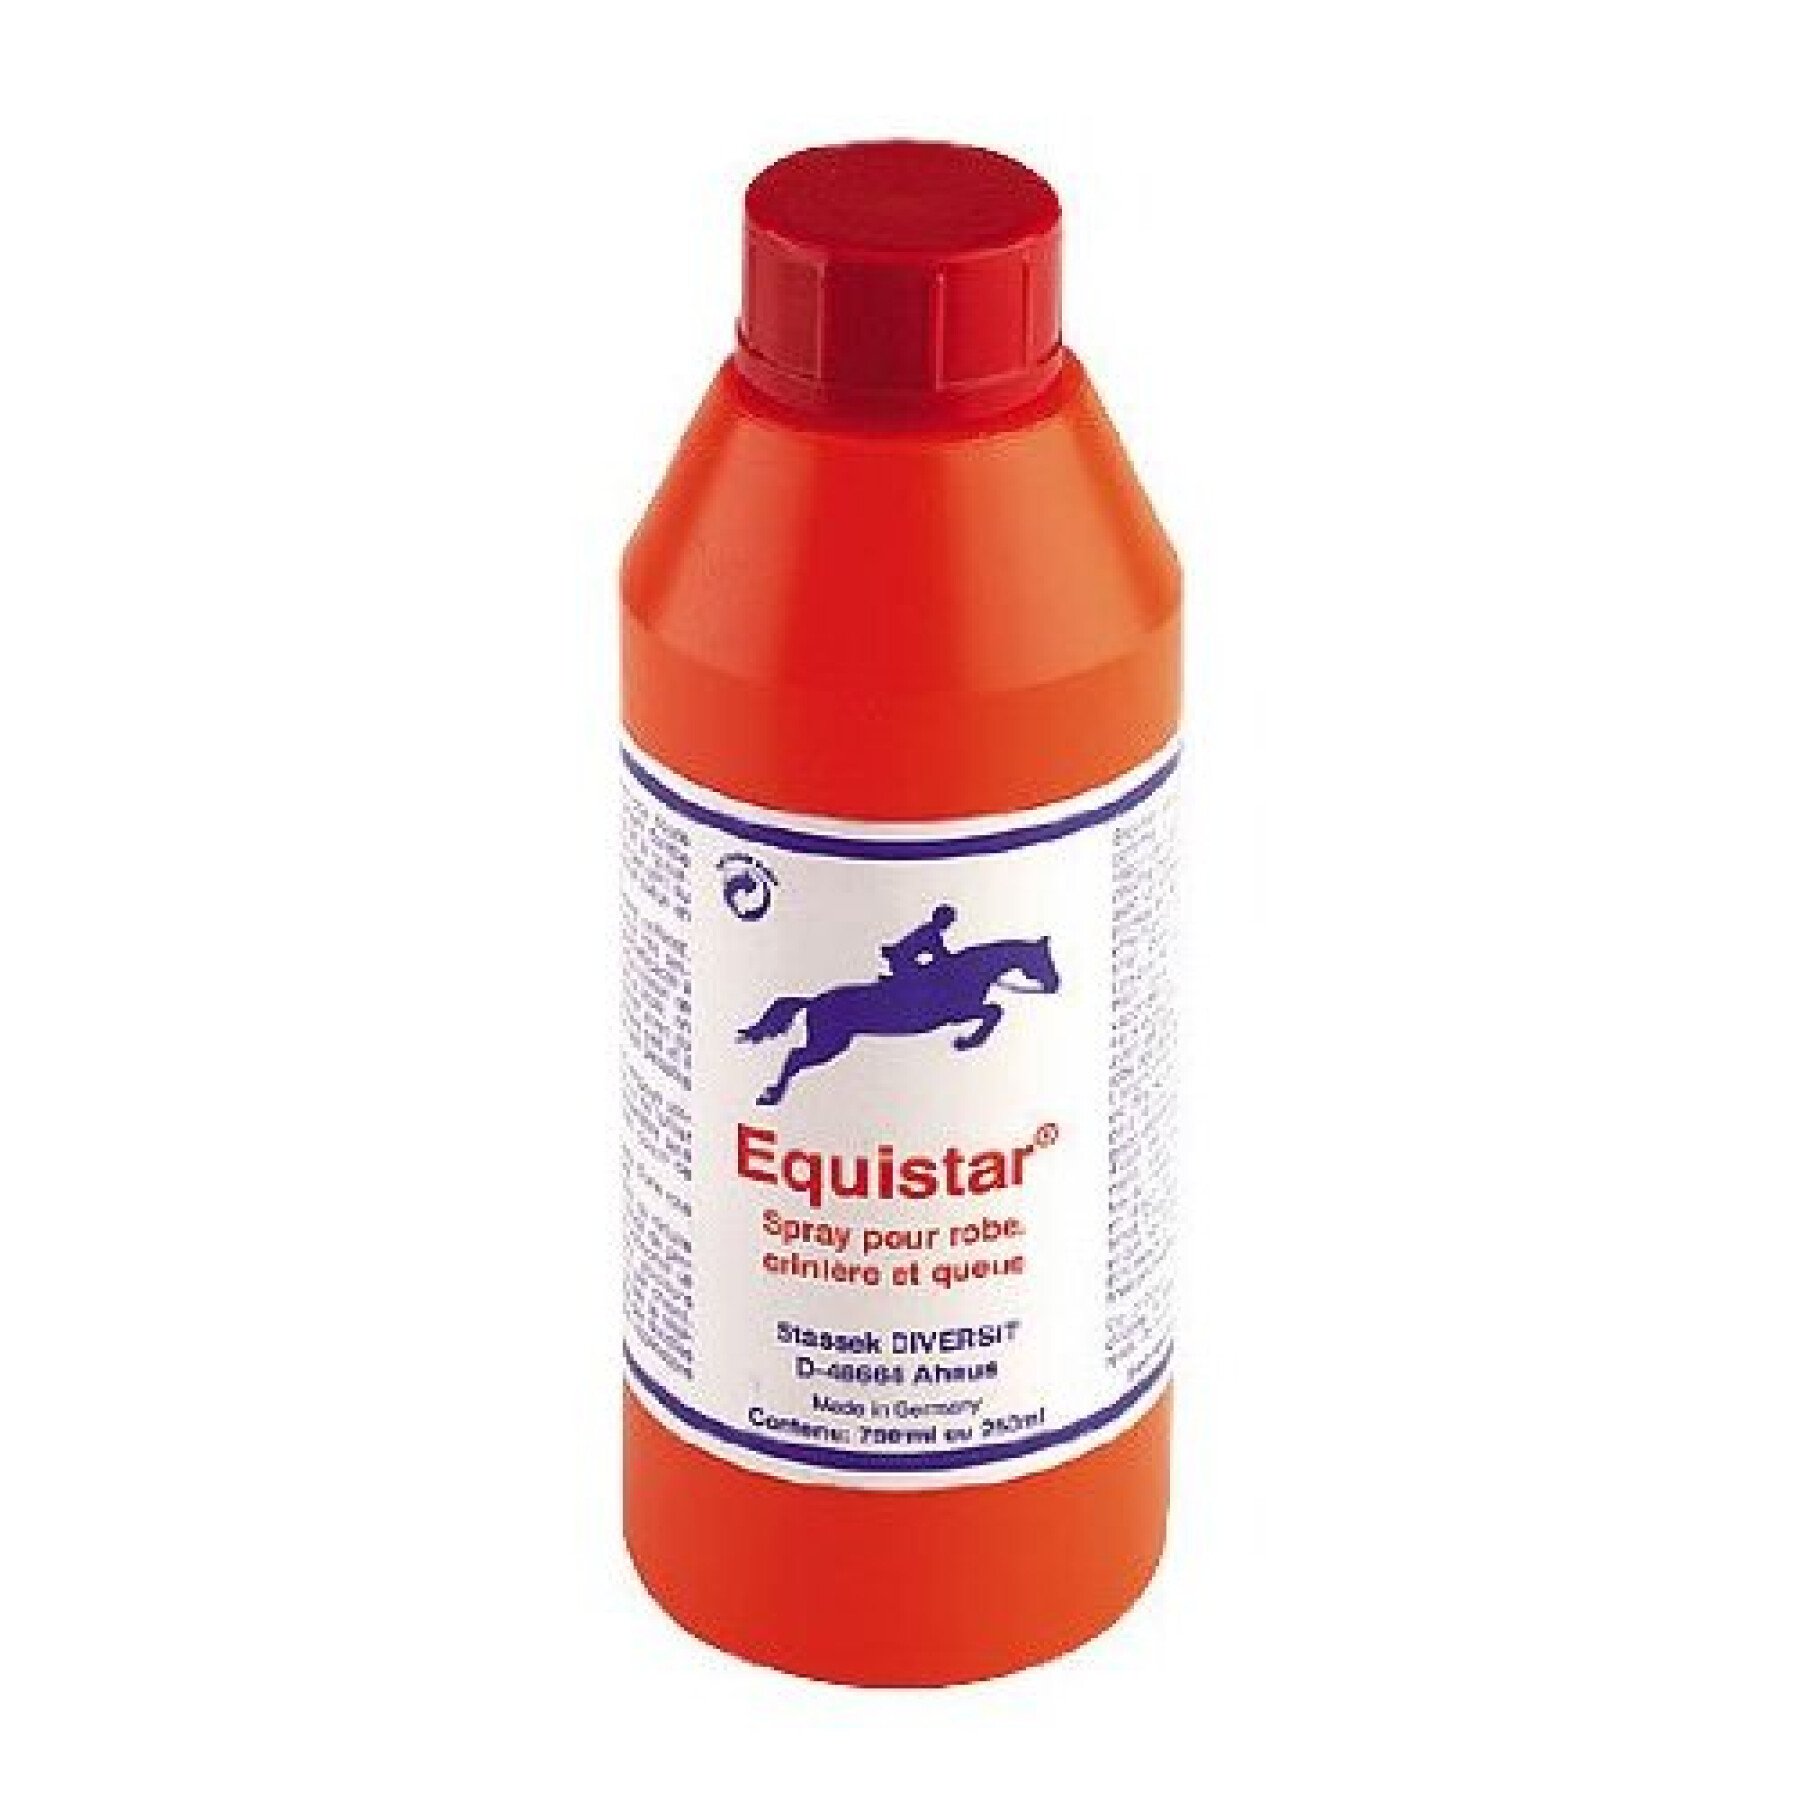 Paardenvachtreiniger Stassek Equistar 750 ml